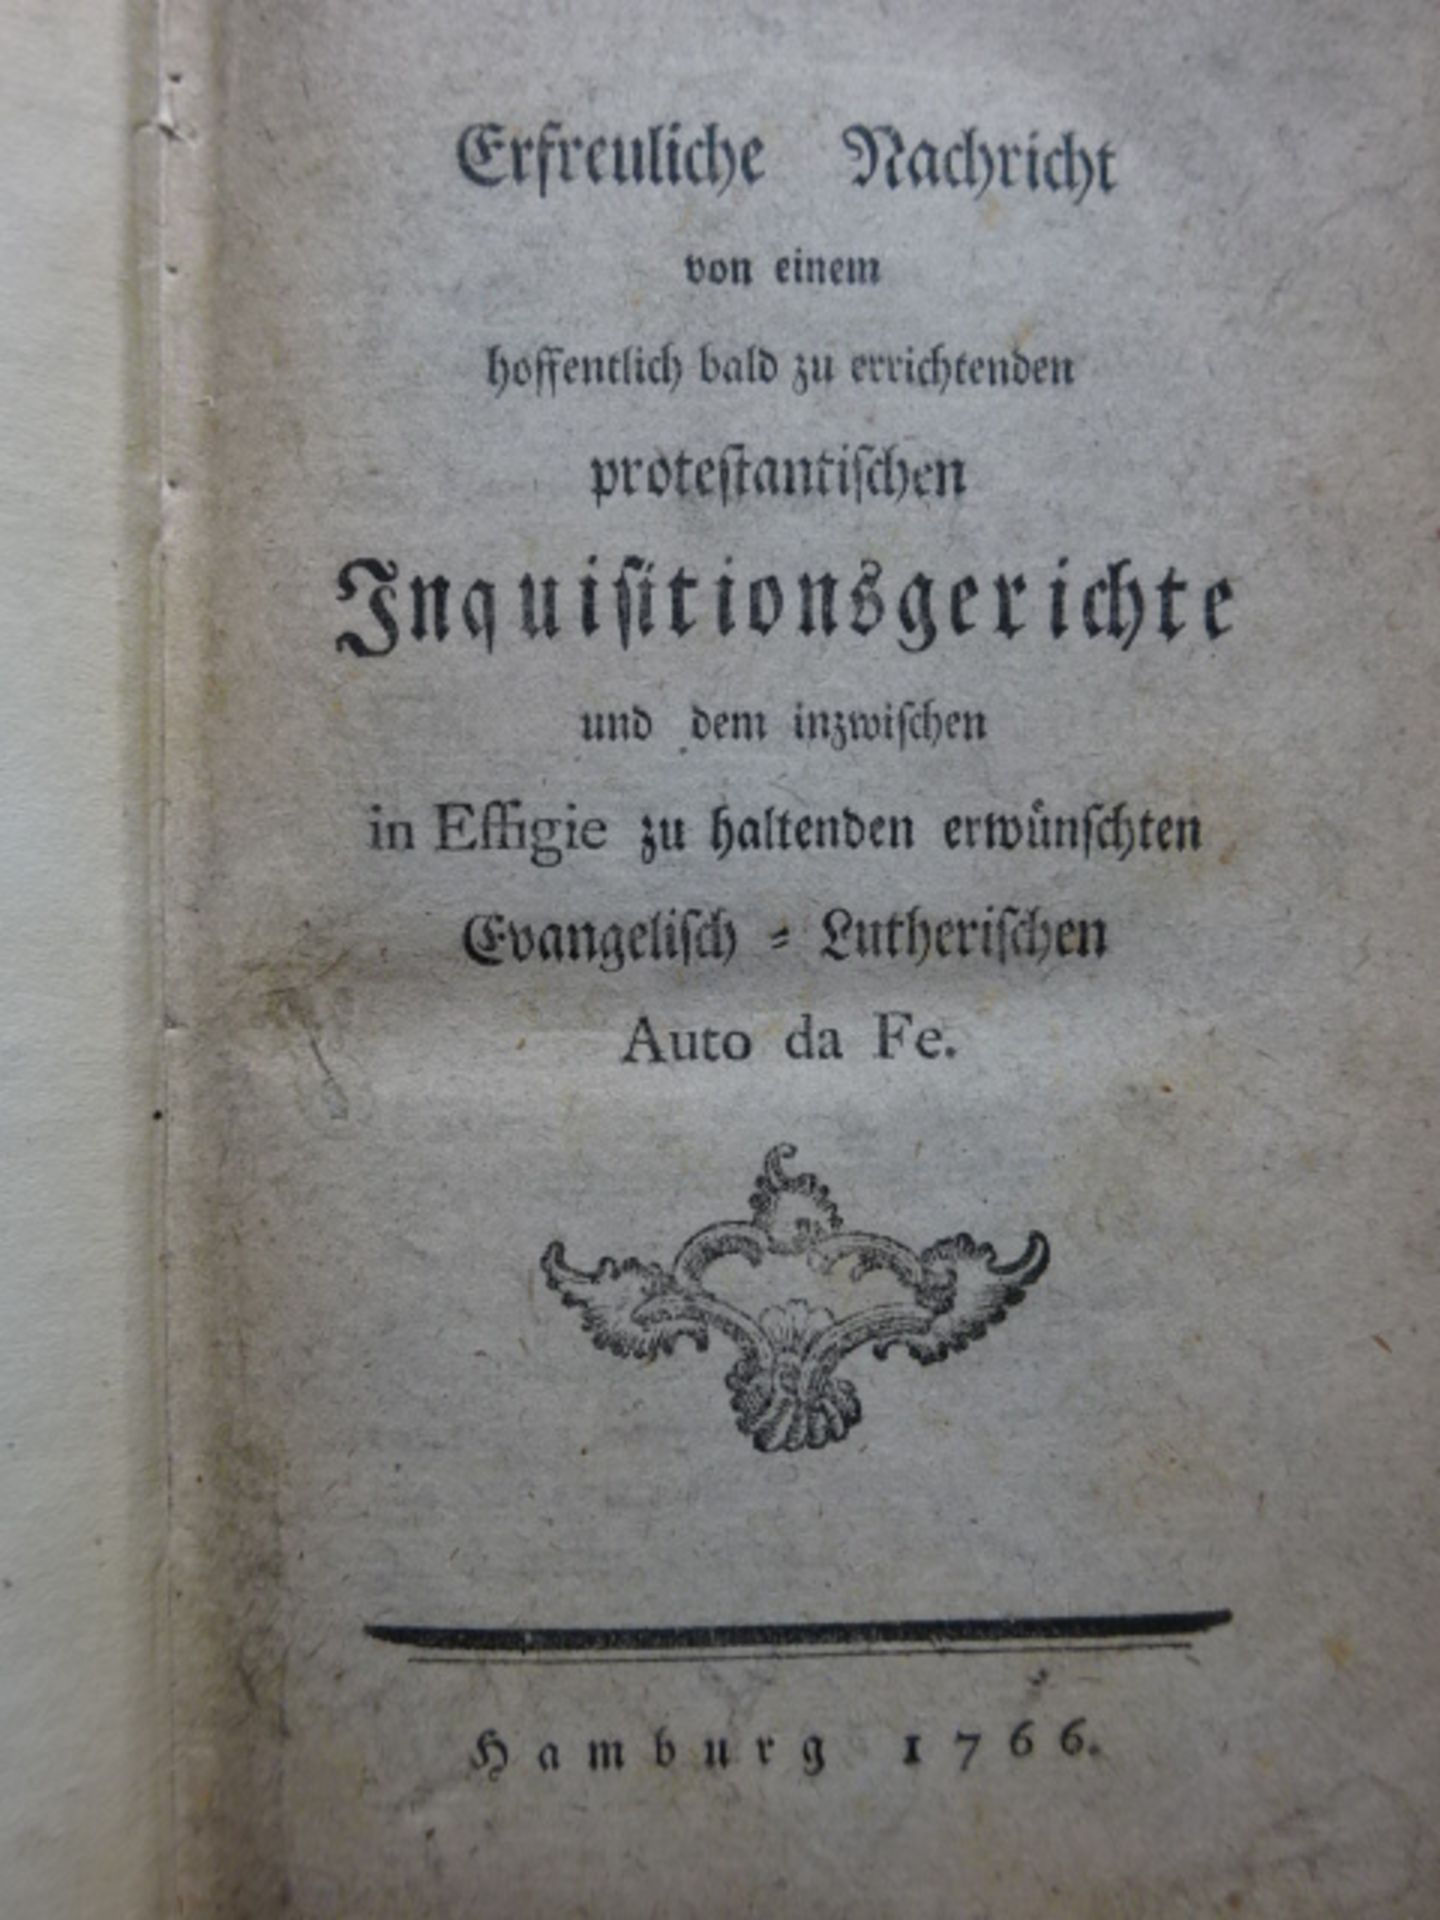 Sammelband Streitschriften 'Opuscula' - Image 2 of 6